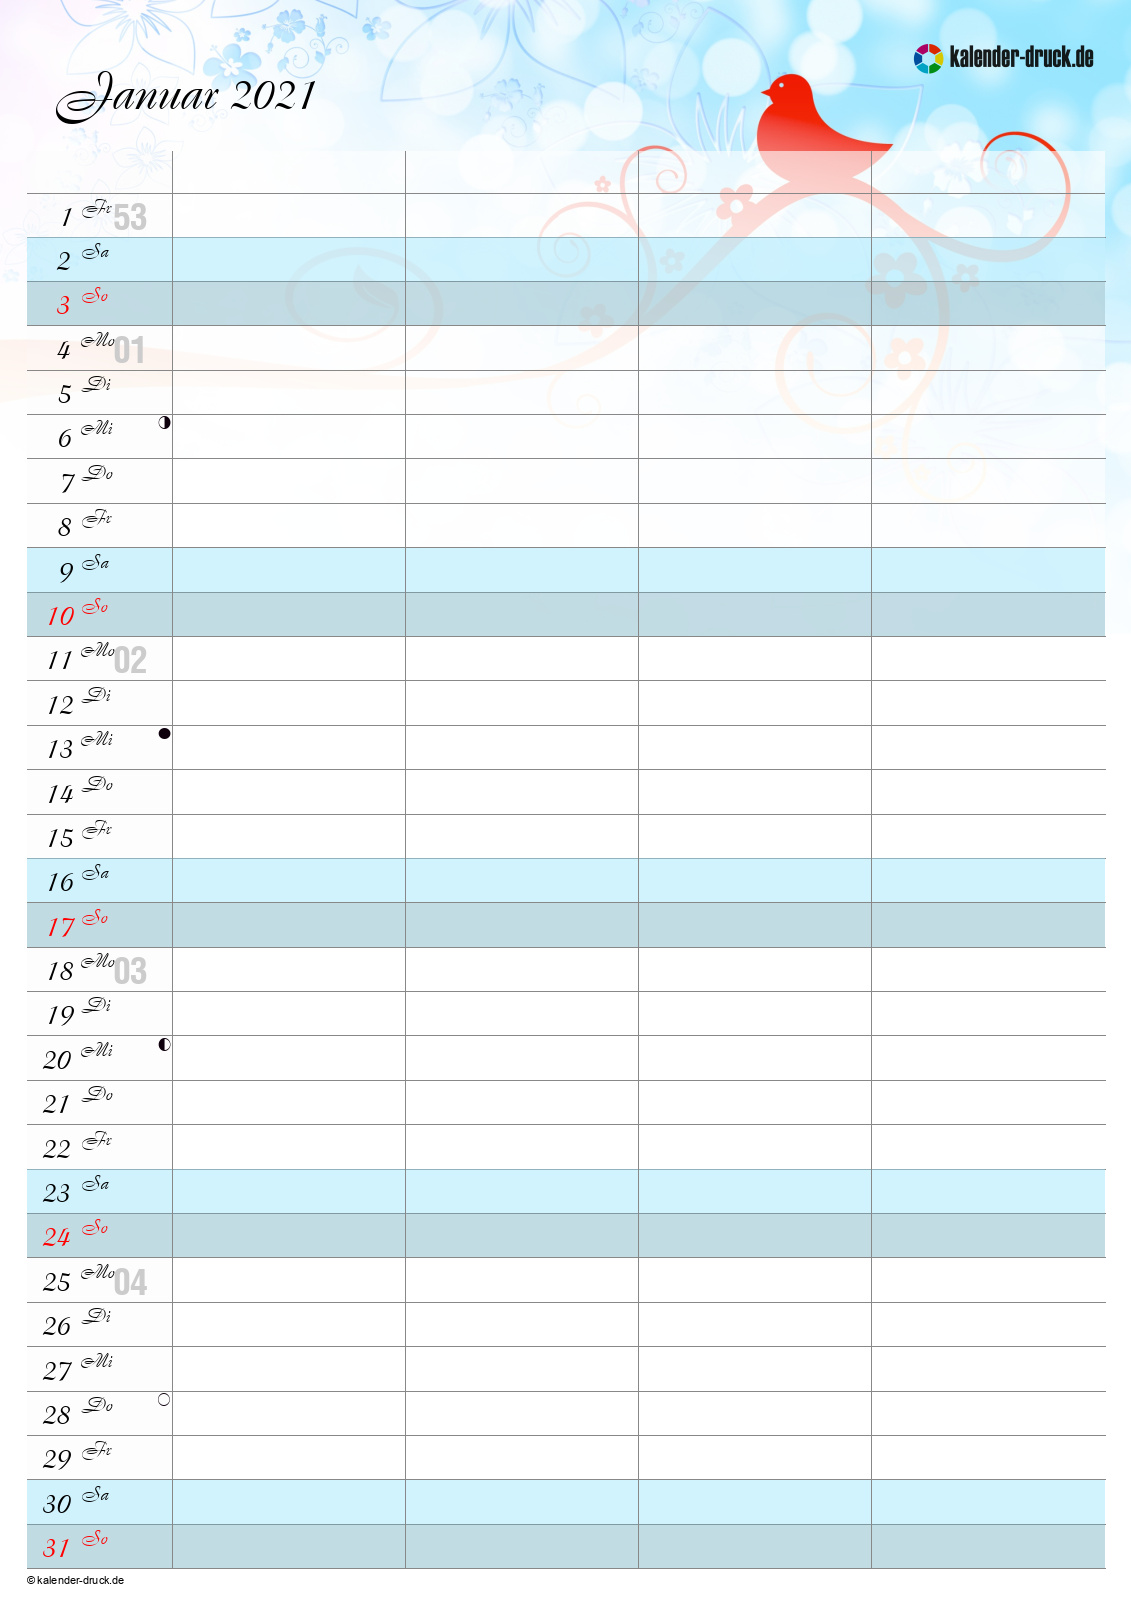 Featured image of post Kalender 2021 Brandenburg Excel / Di bawah ini kami berikan kalender pendidikan tahun ajaran baru 2020/2021 pdf / excel untuk semua provinsi di indonesia.